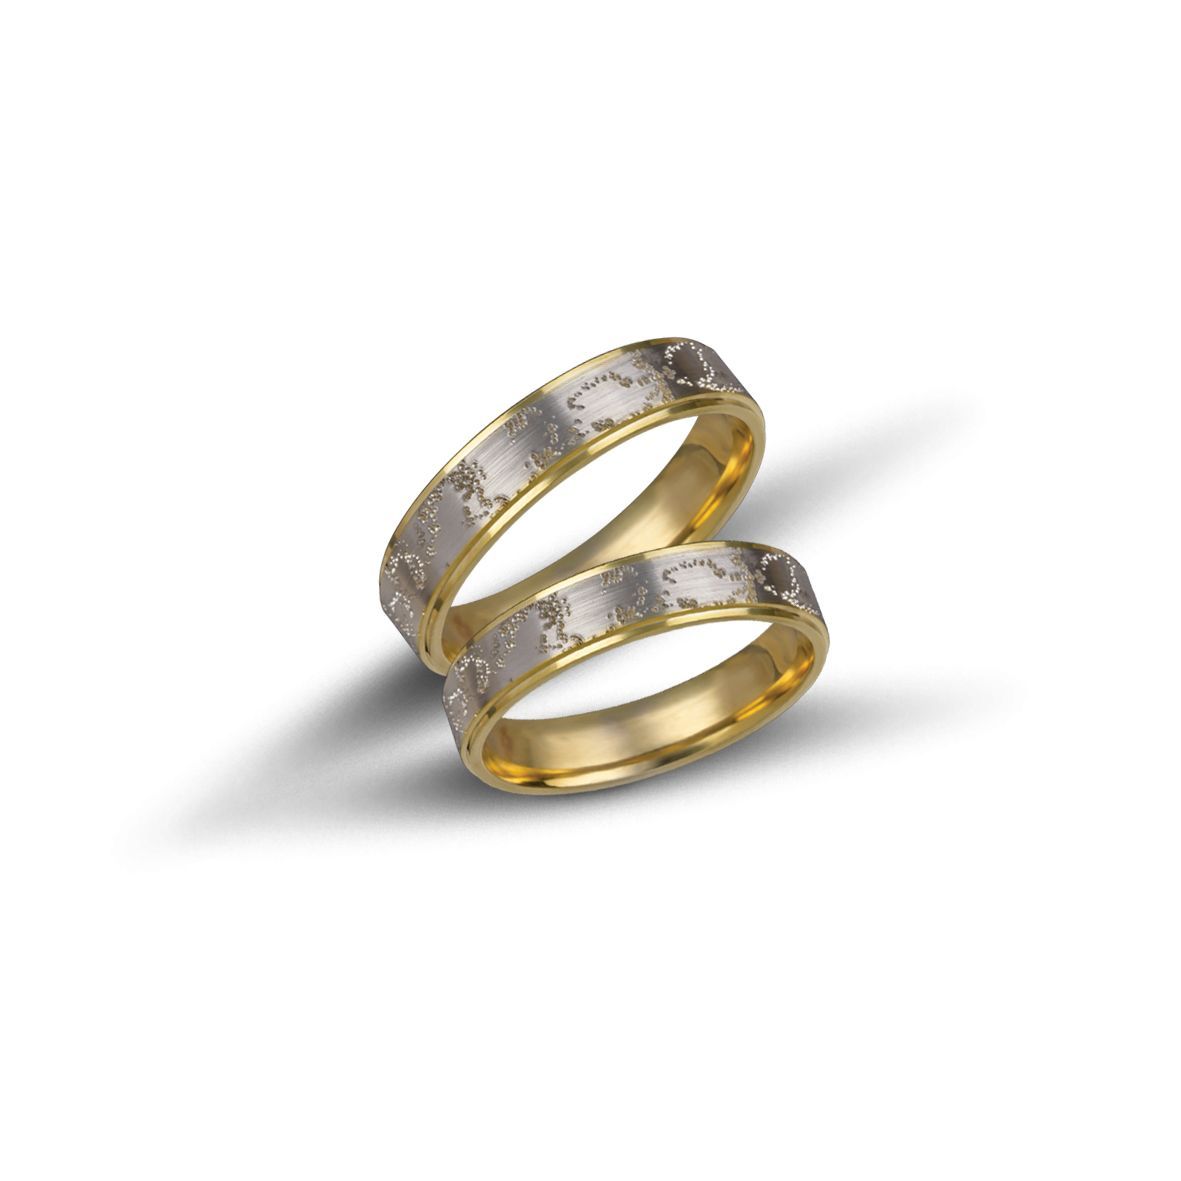 White gold & gold wedding rings 4.4mm  (code VK2016/44)